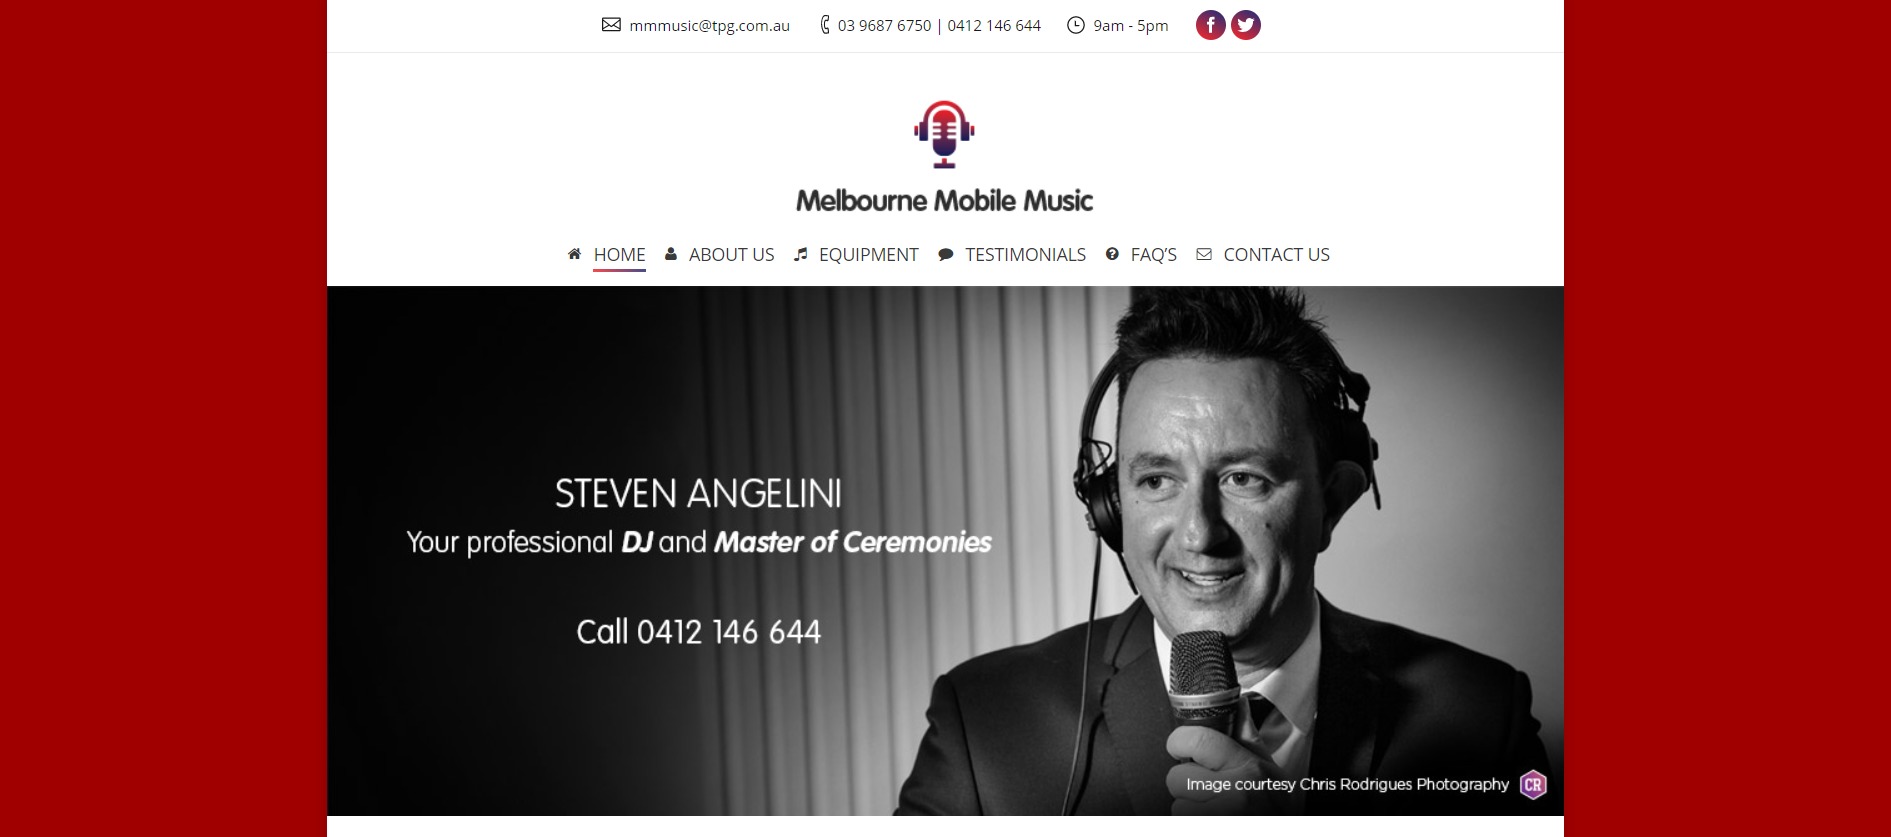 Melbourne Mobile Music